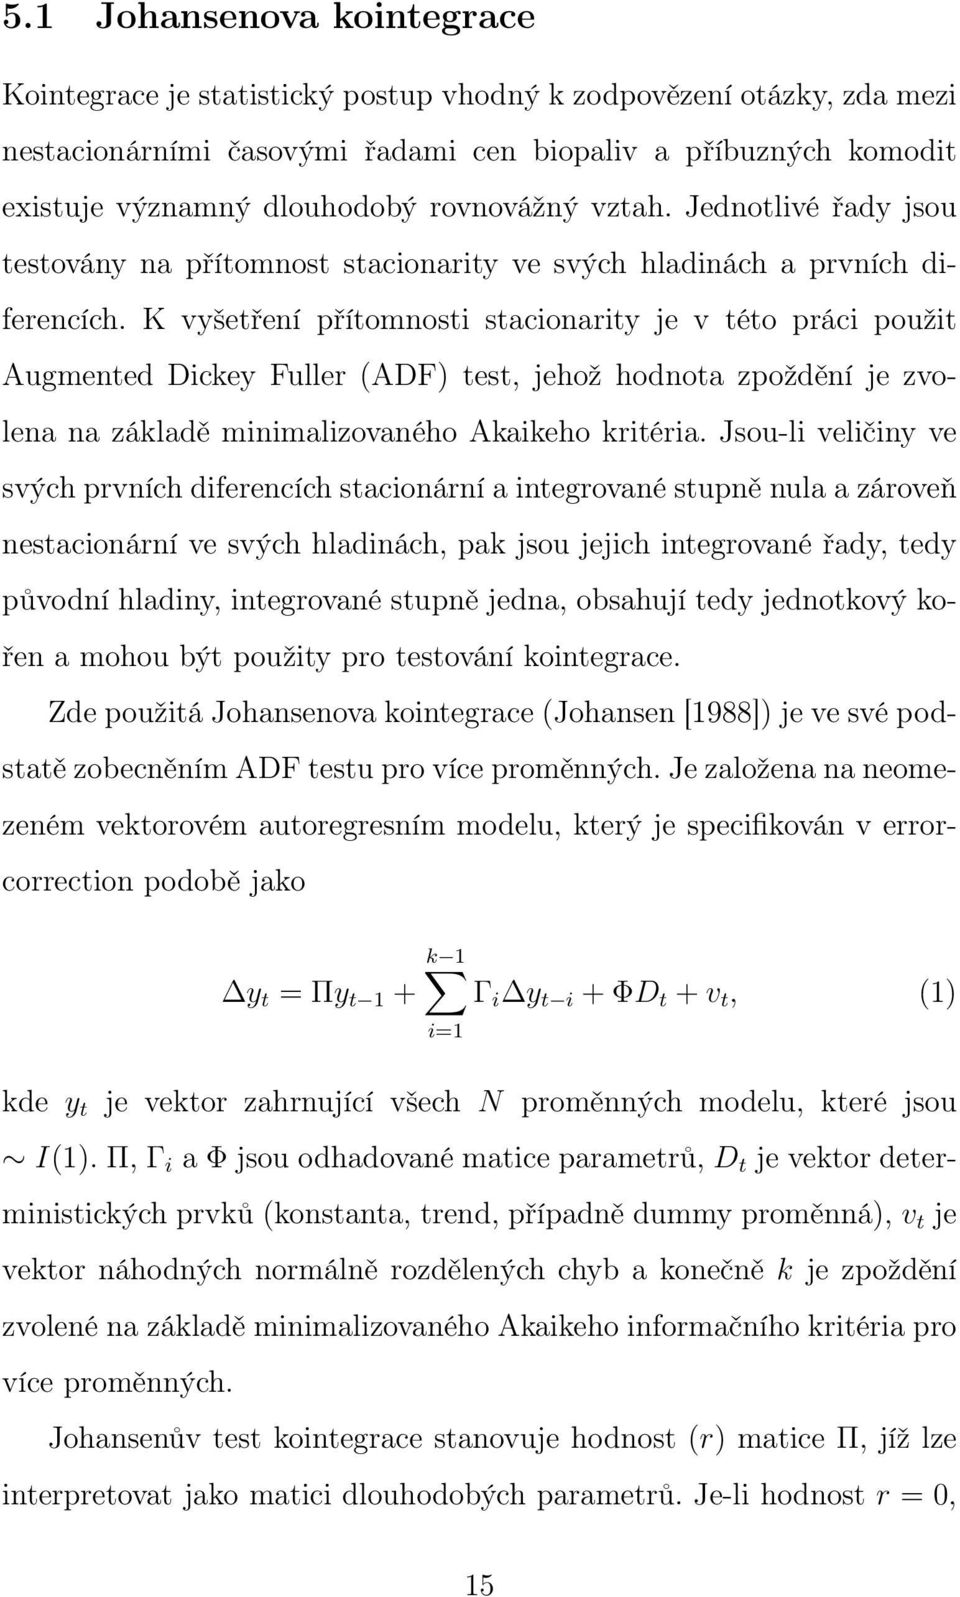 K vyšetření přítomnosti stacionarity je v této práci použit Augmented Dickey Fuller (ADF) test, jehož hodnota zpoždění je zvolena na základě minimalizovaného Akaikeho kritéria.